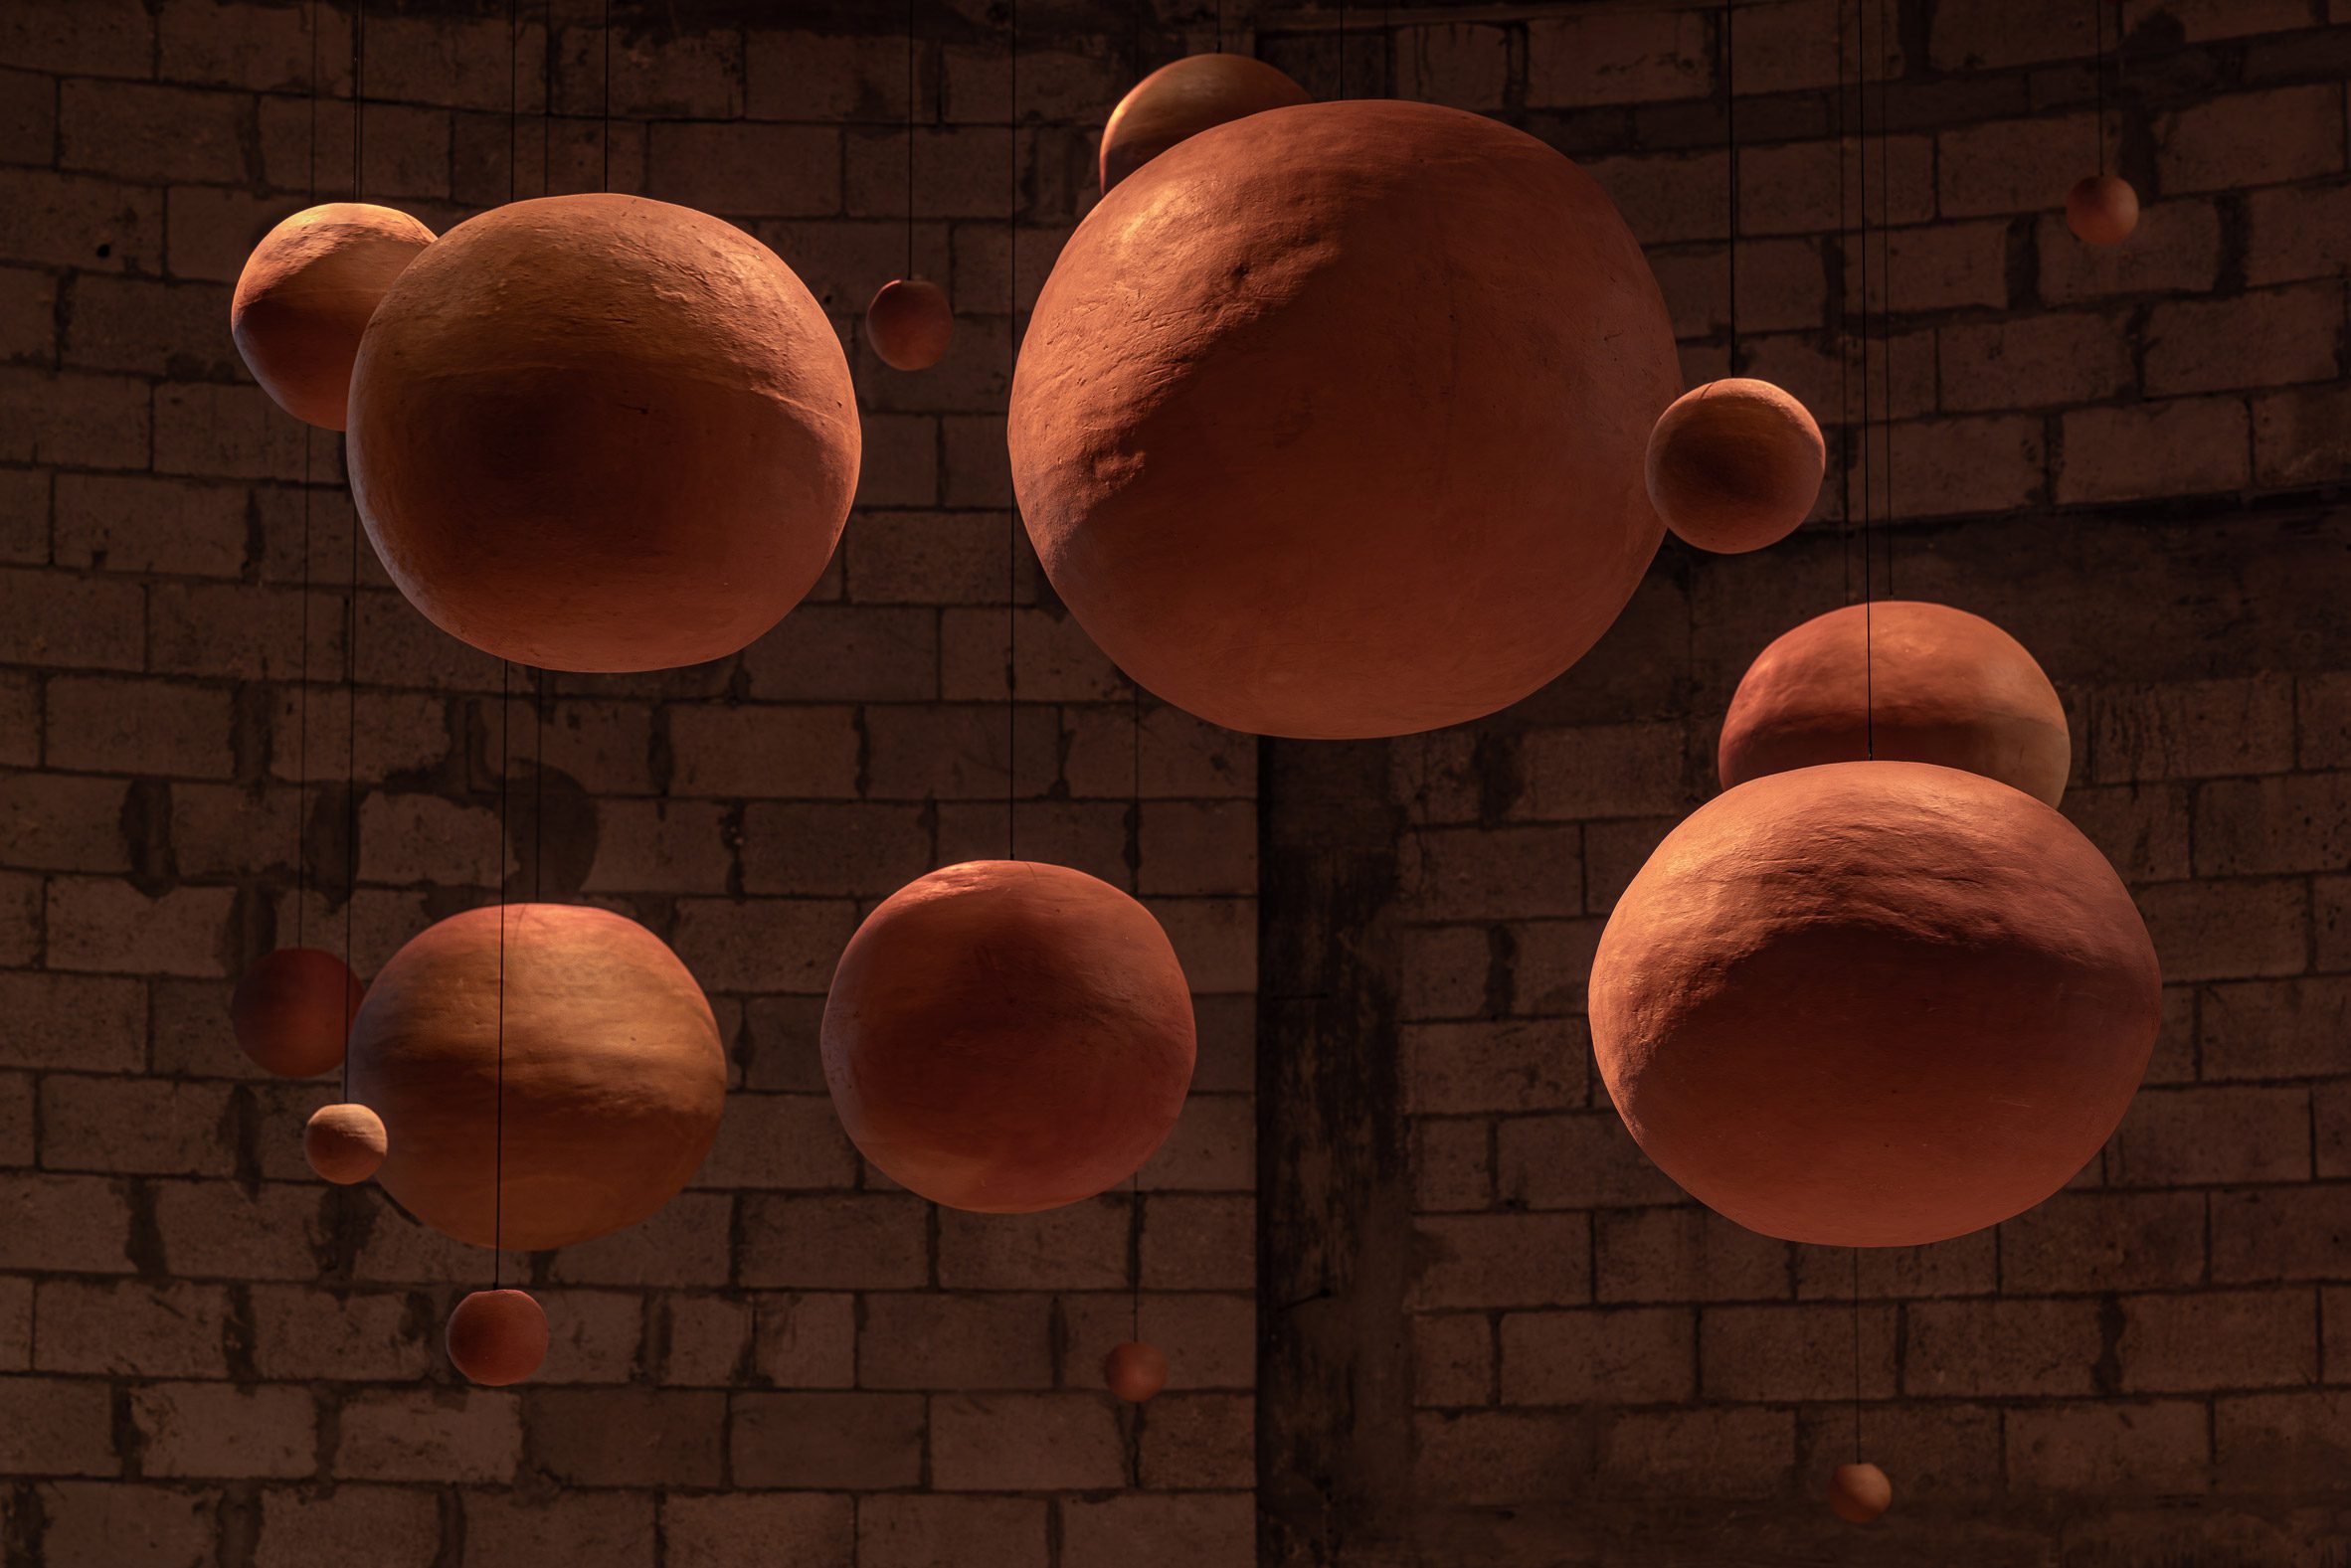 Ceramic spheres